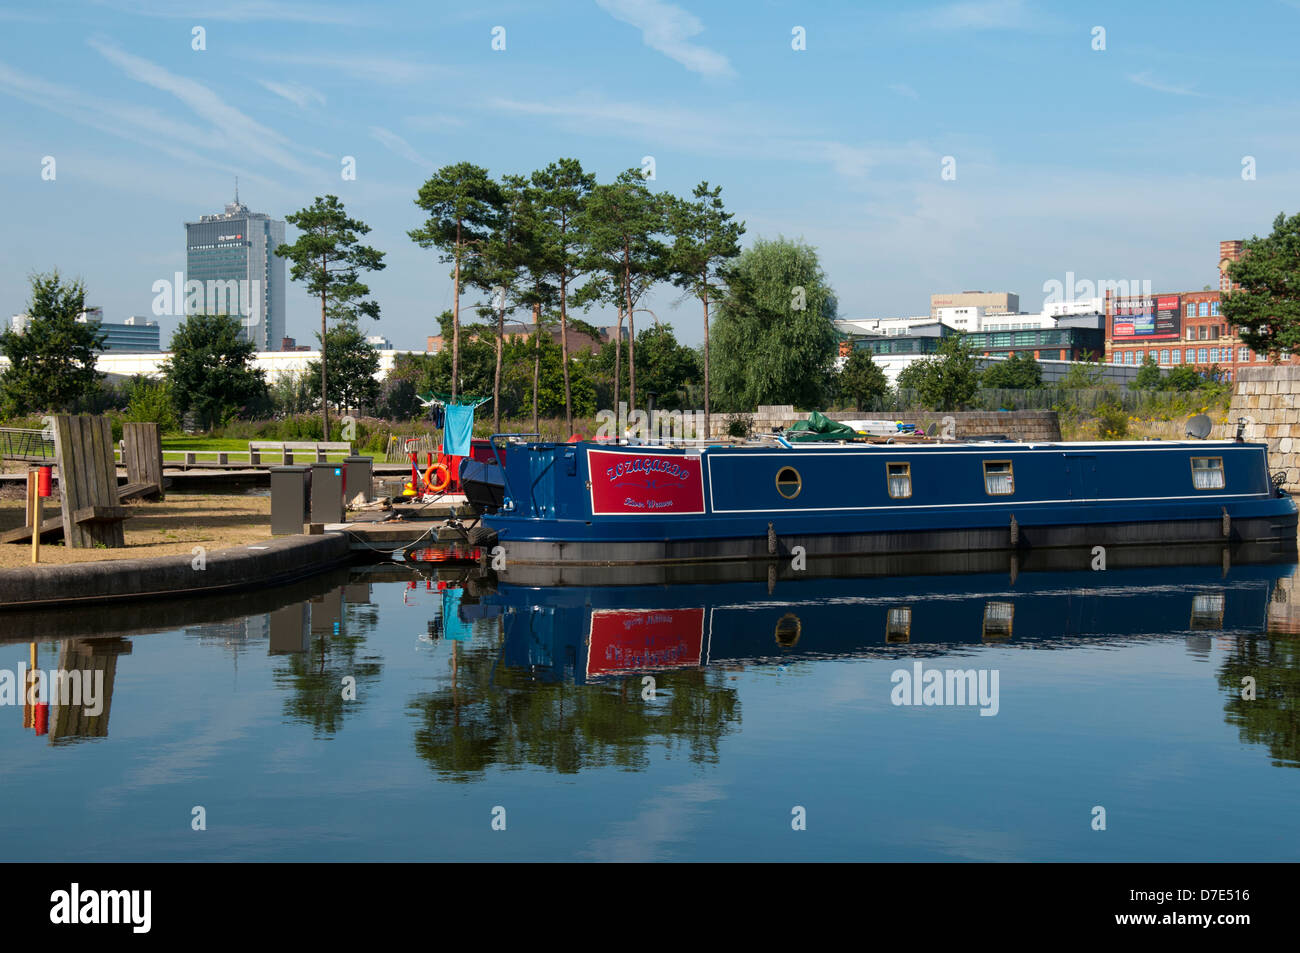 Barco narrowboat Canal y árboles reflejados en el puerto deportivo de Cotton Field Park, New Islington, Ancoats, Manchester, Inglaterra, Reino Unido. Torre de la ciudad en el fondo. Foto de stock